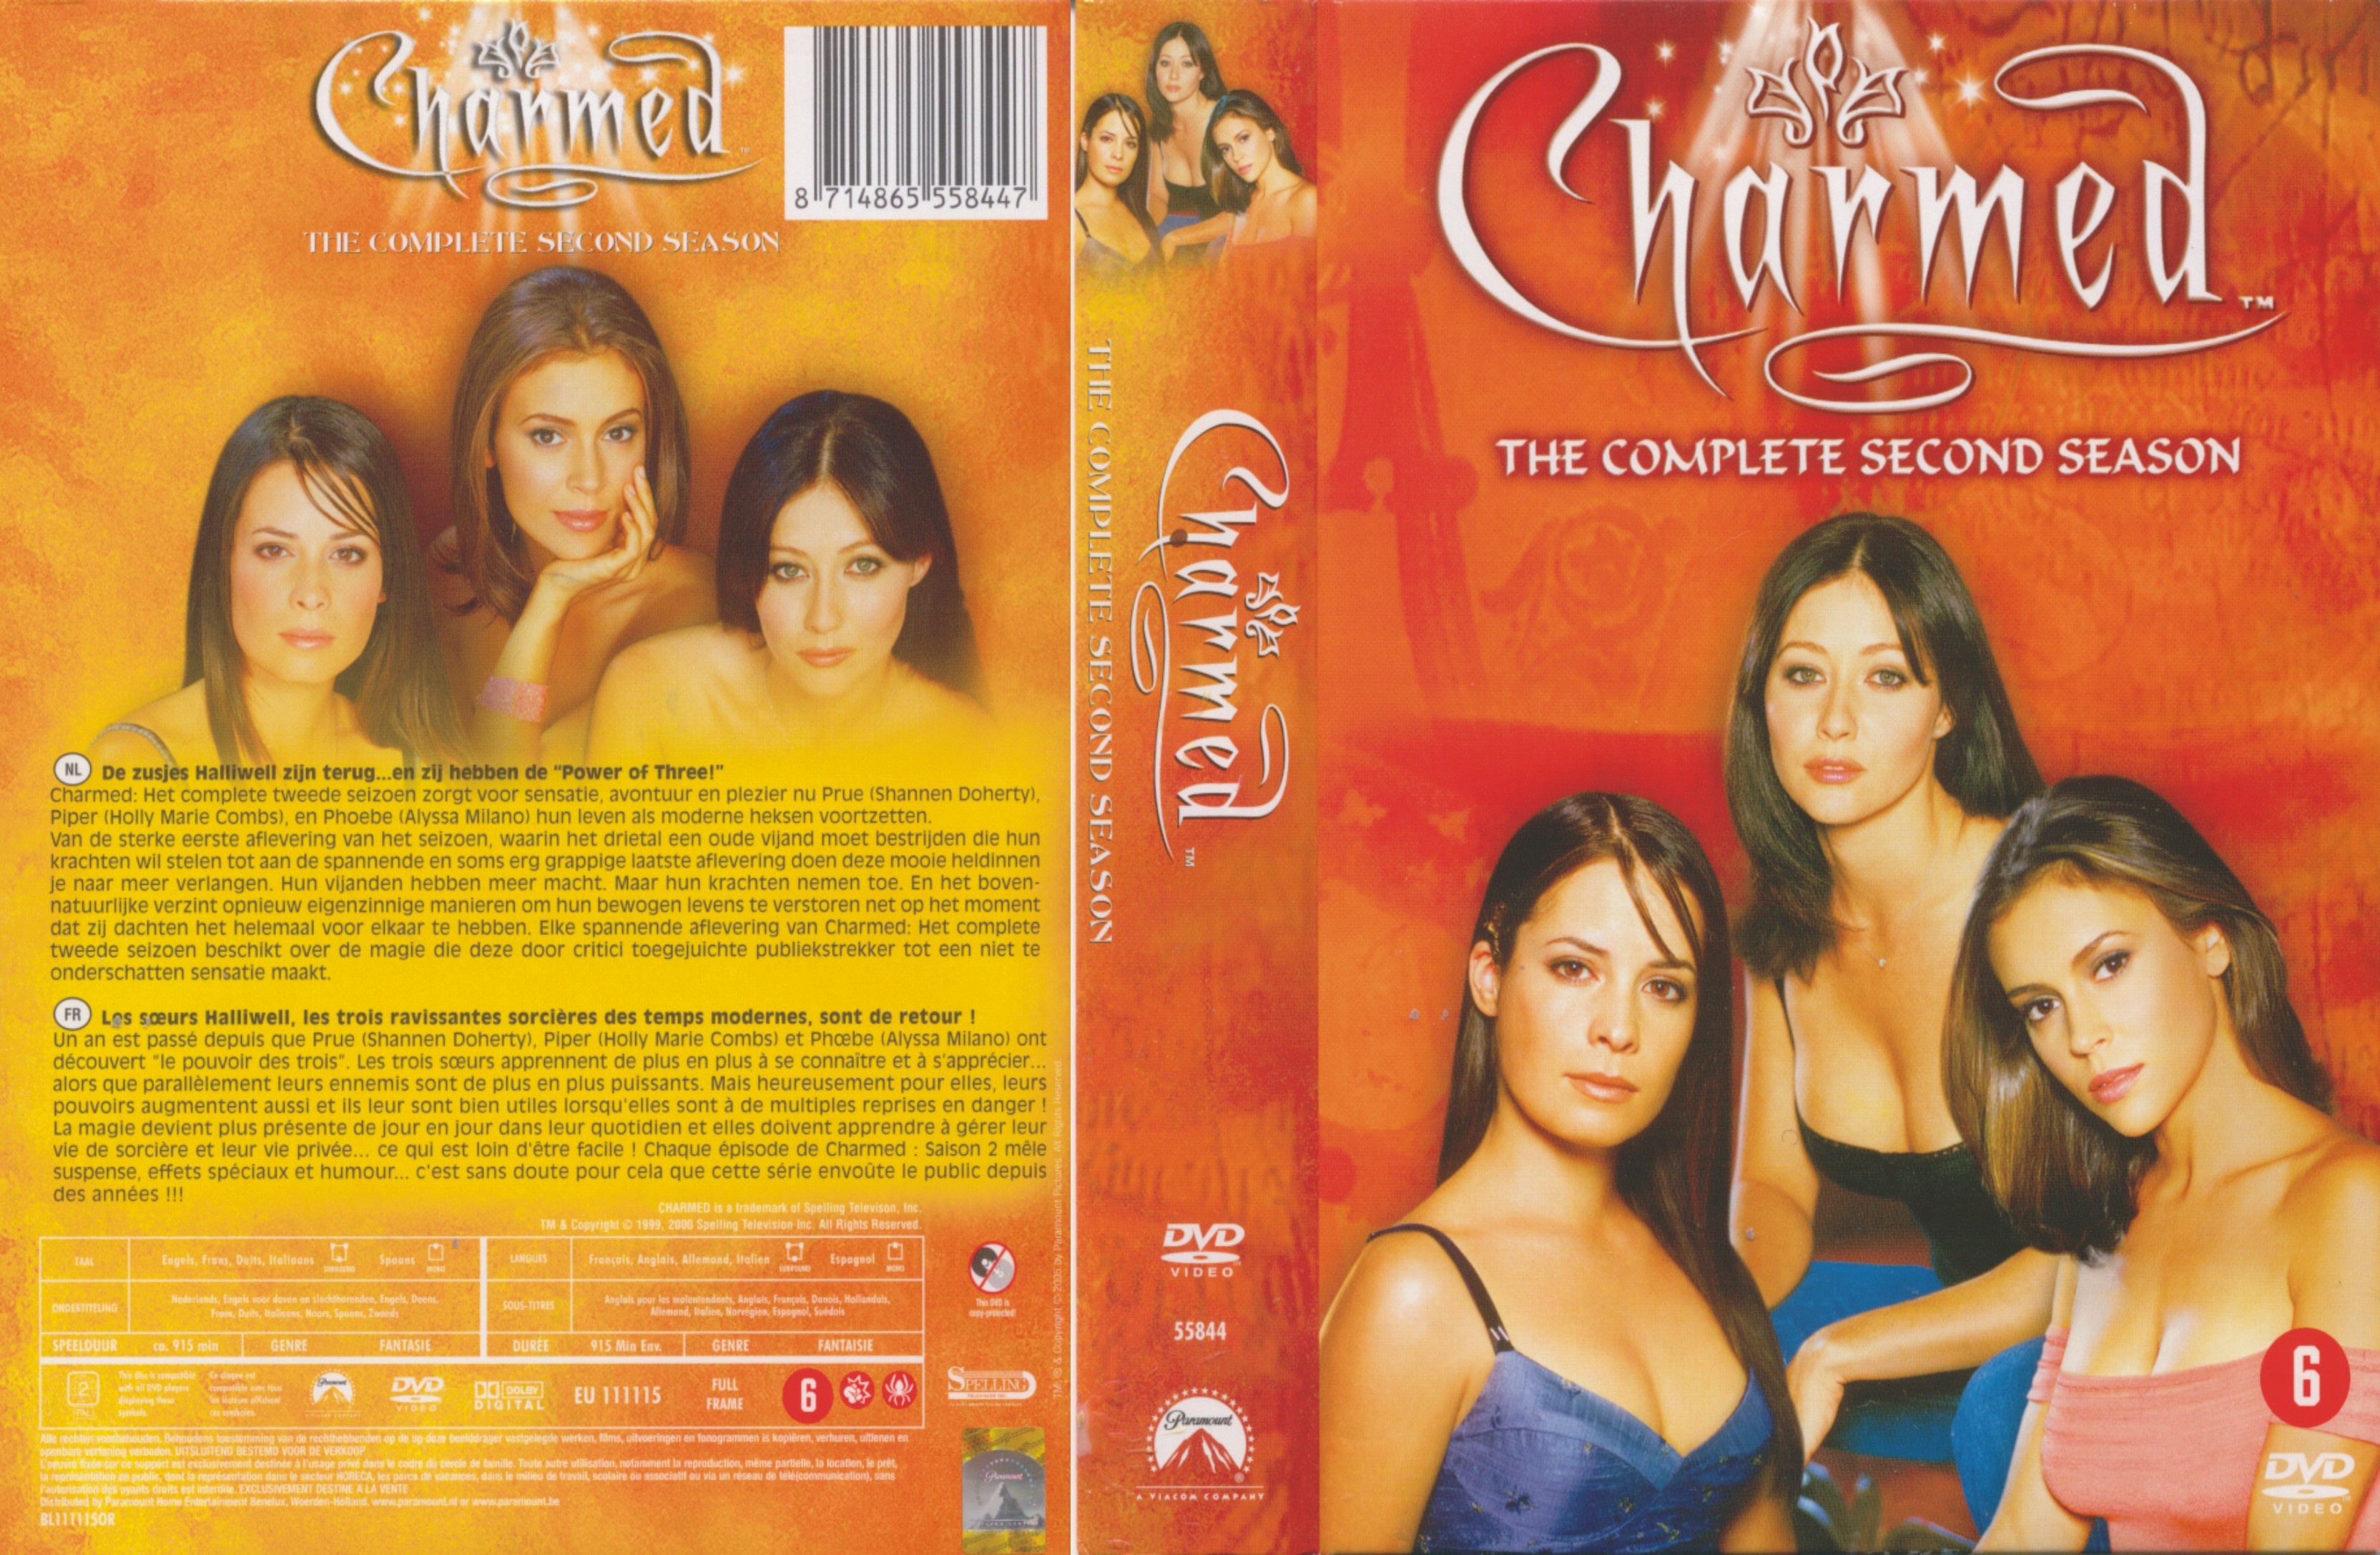 Jaquette DVD Charmed Saison 2 COFFRET